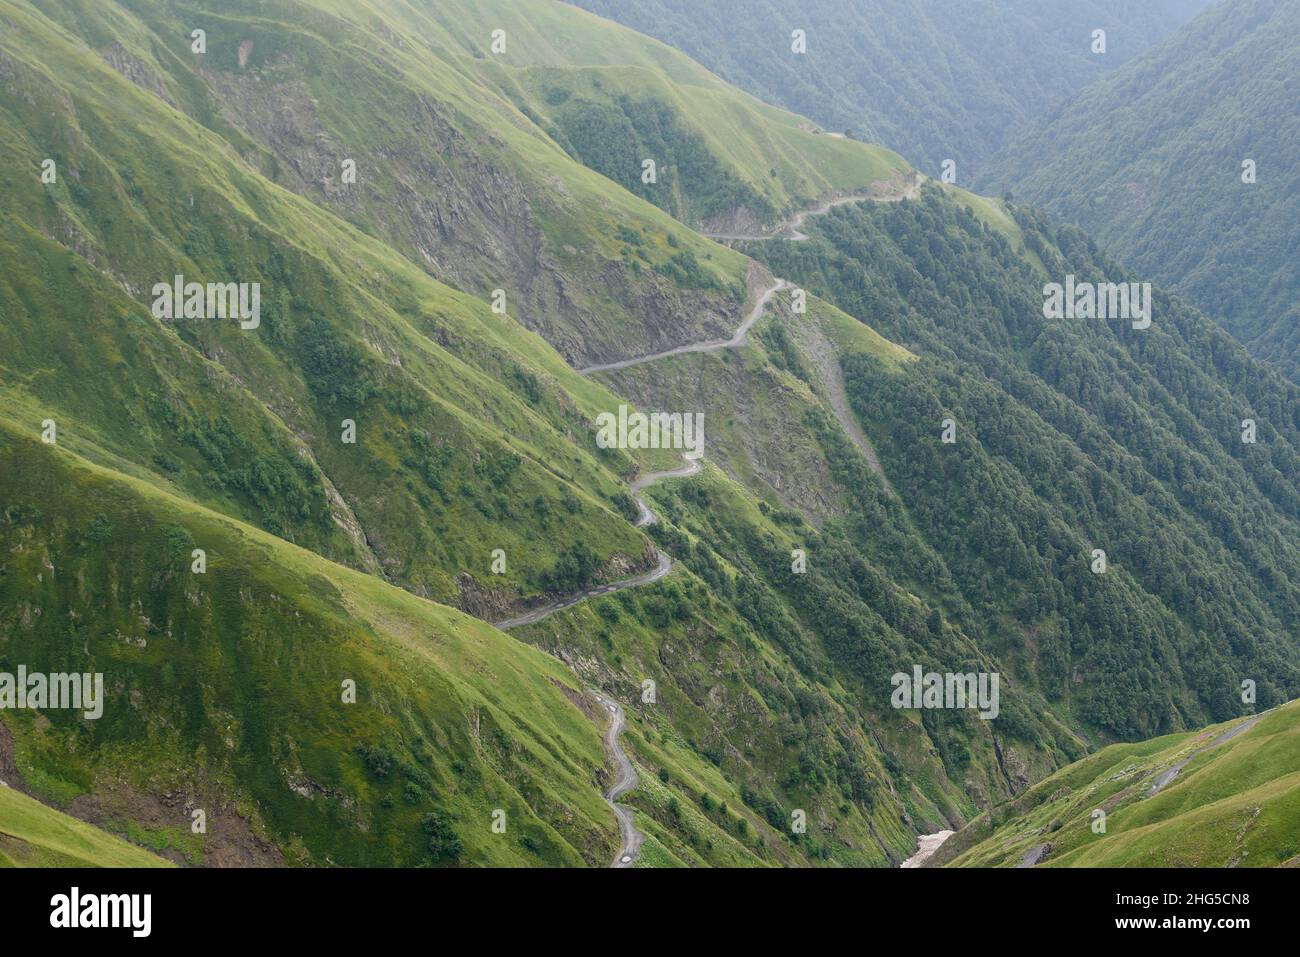 La route sinueuse connue sous le nom de col Abano, considérée comme l'une des routes les plus dangereuses du monde. Banque D'Images